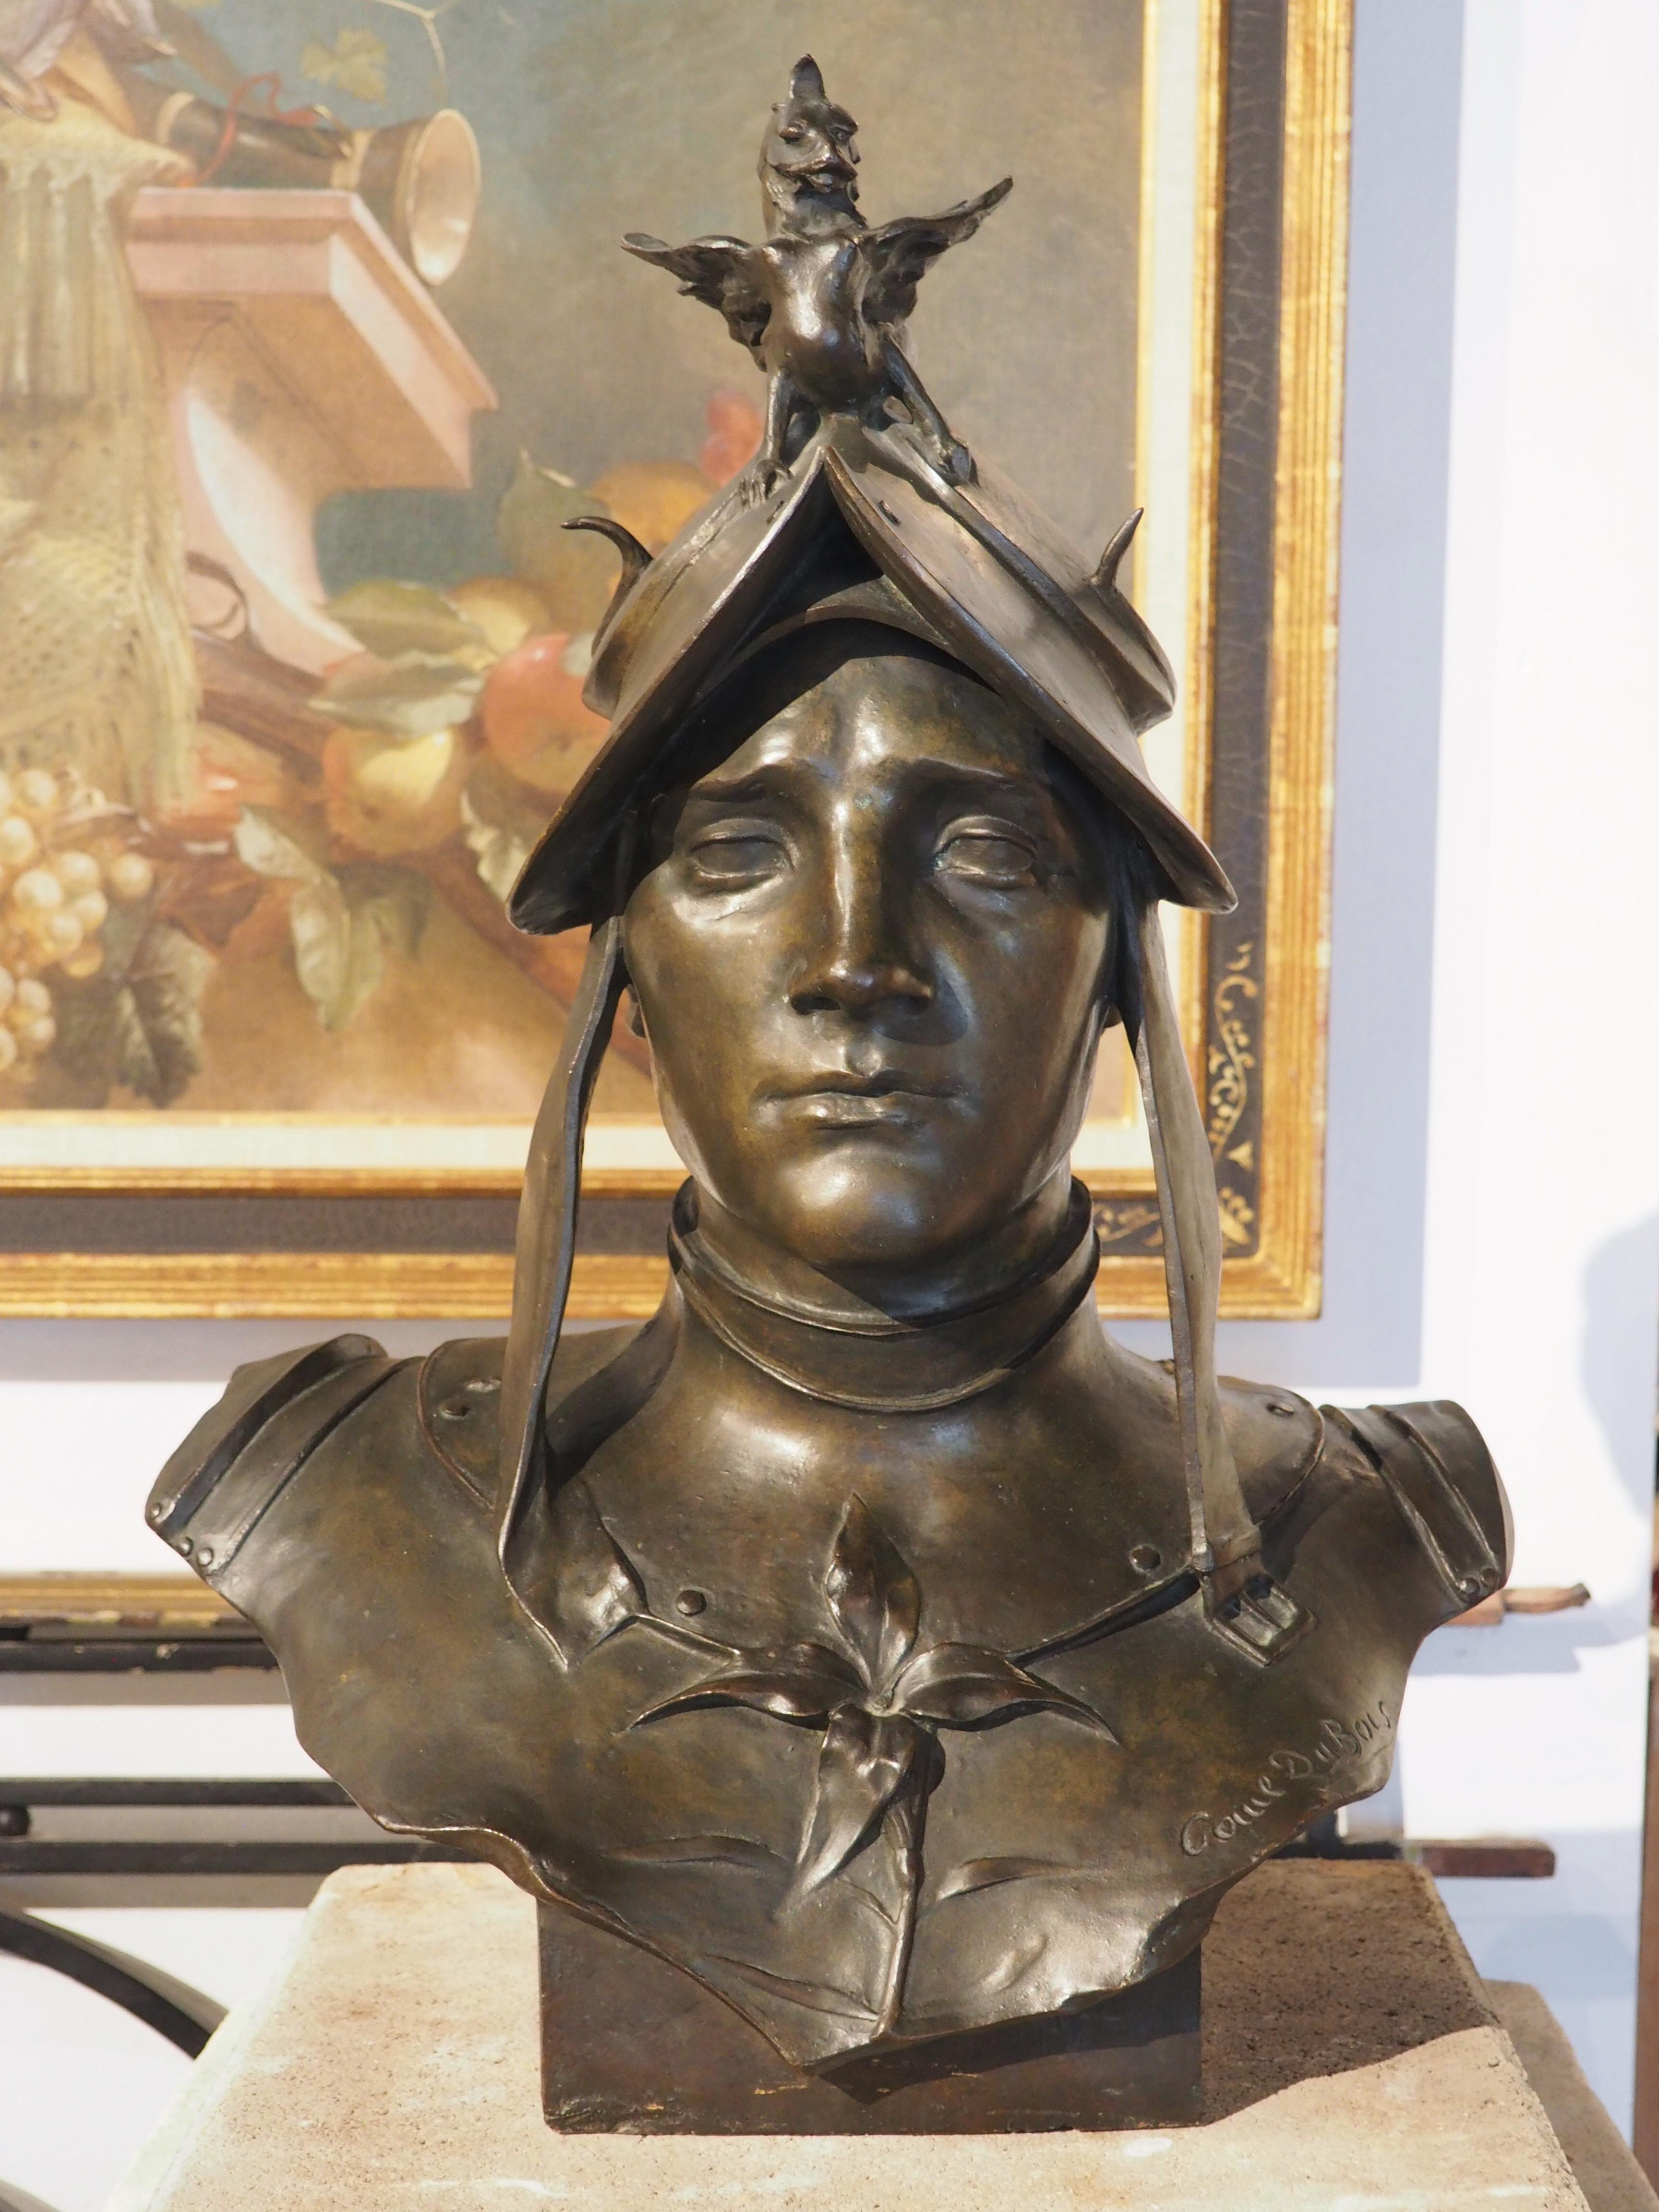 Fondé en France dans les années 1800, ce buste en bronze patiné représente une femme soldat, d'après la coiffure et l'accoutrement cérémoniel de la cuirasse. Notre soldat stoïque a une fleur à quatre pétales qui orne son plastron (à gauche de la